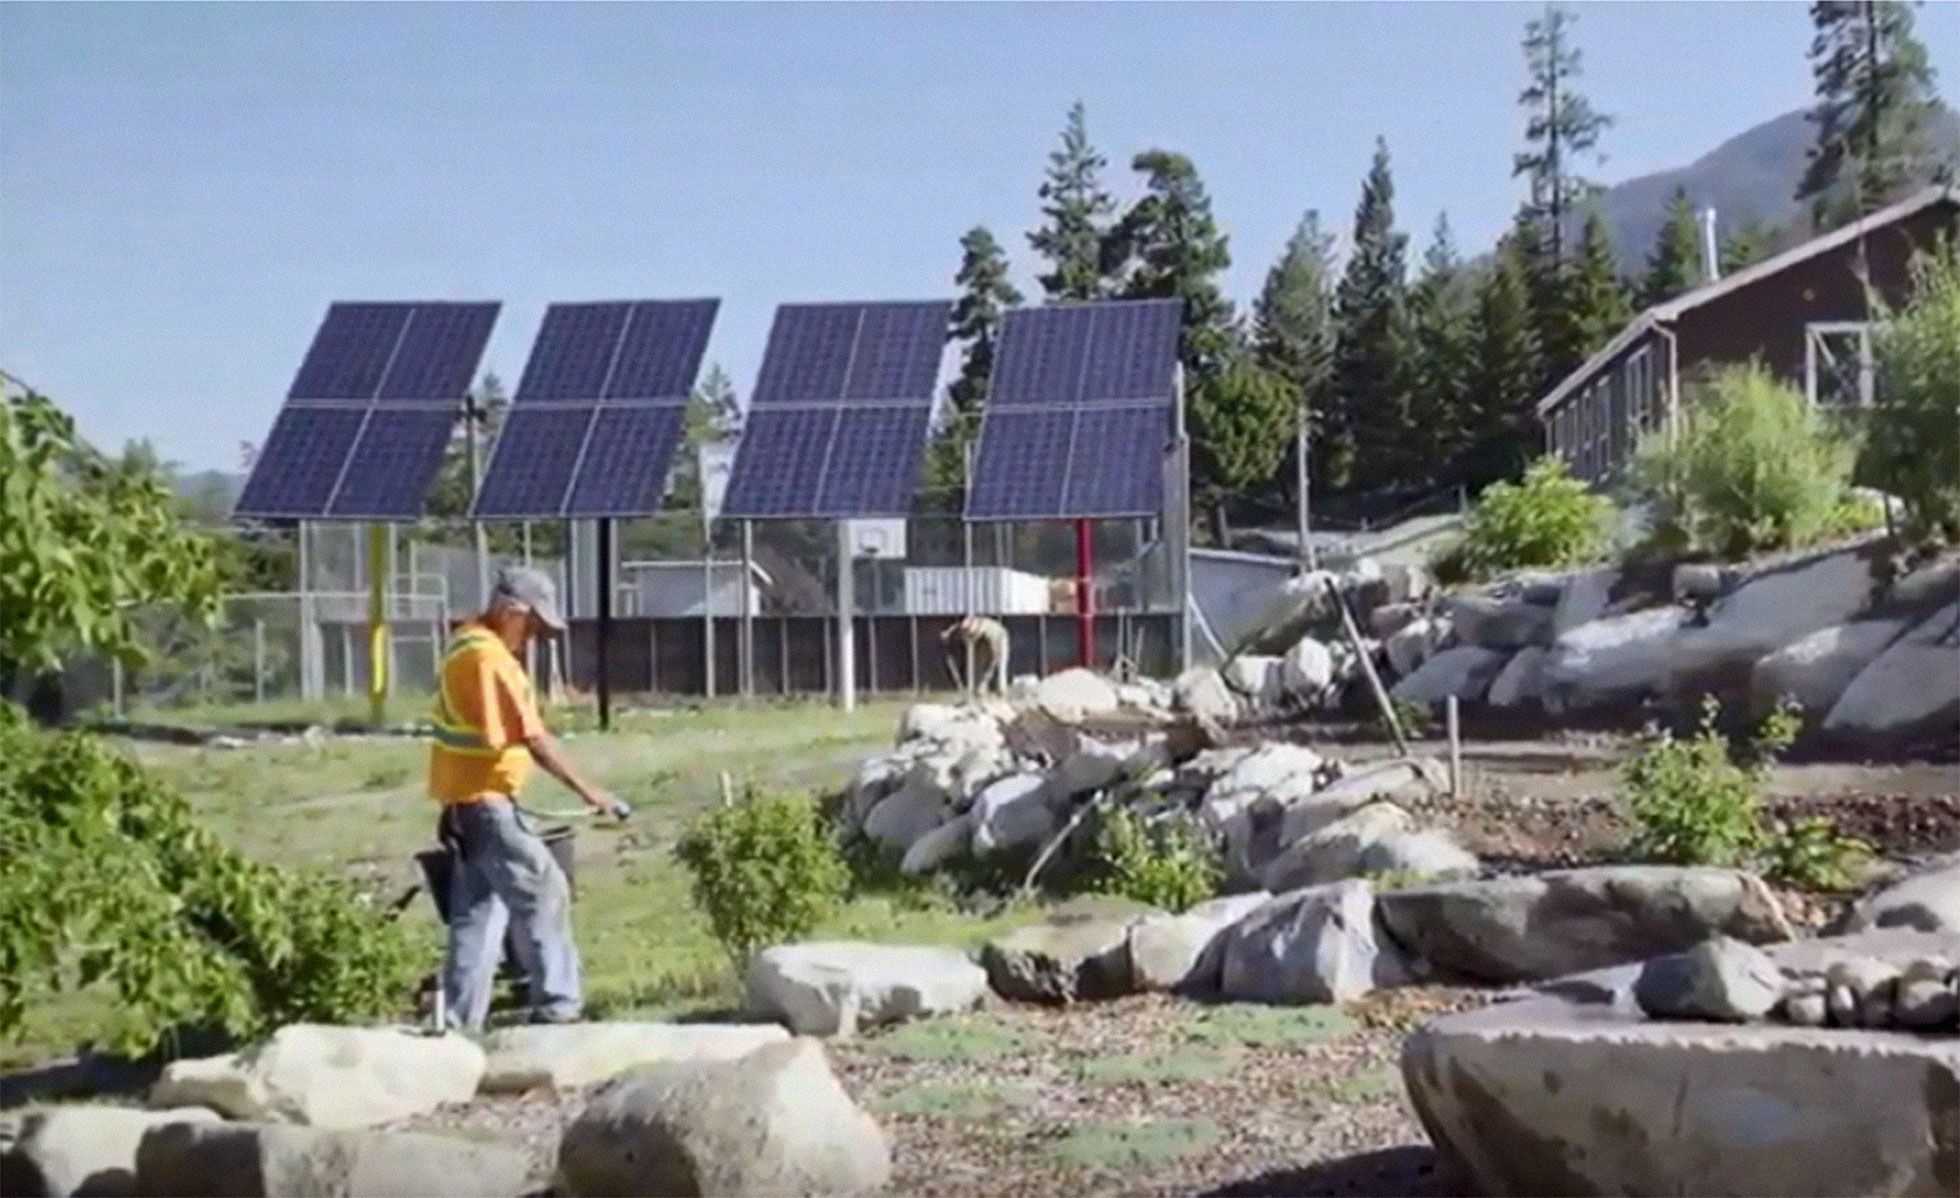 Solar panels in Kanaka Bar, B.C.